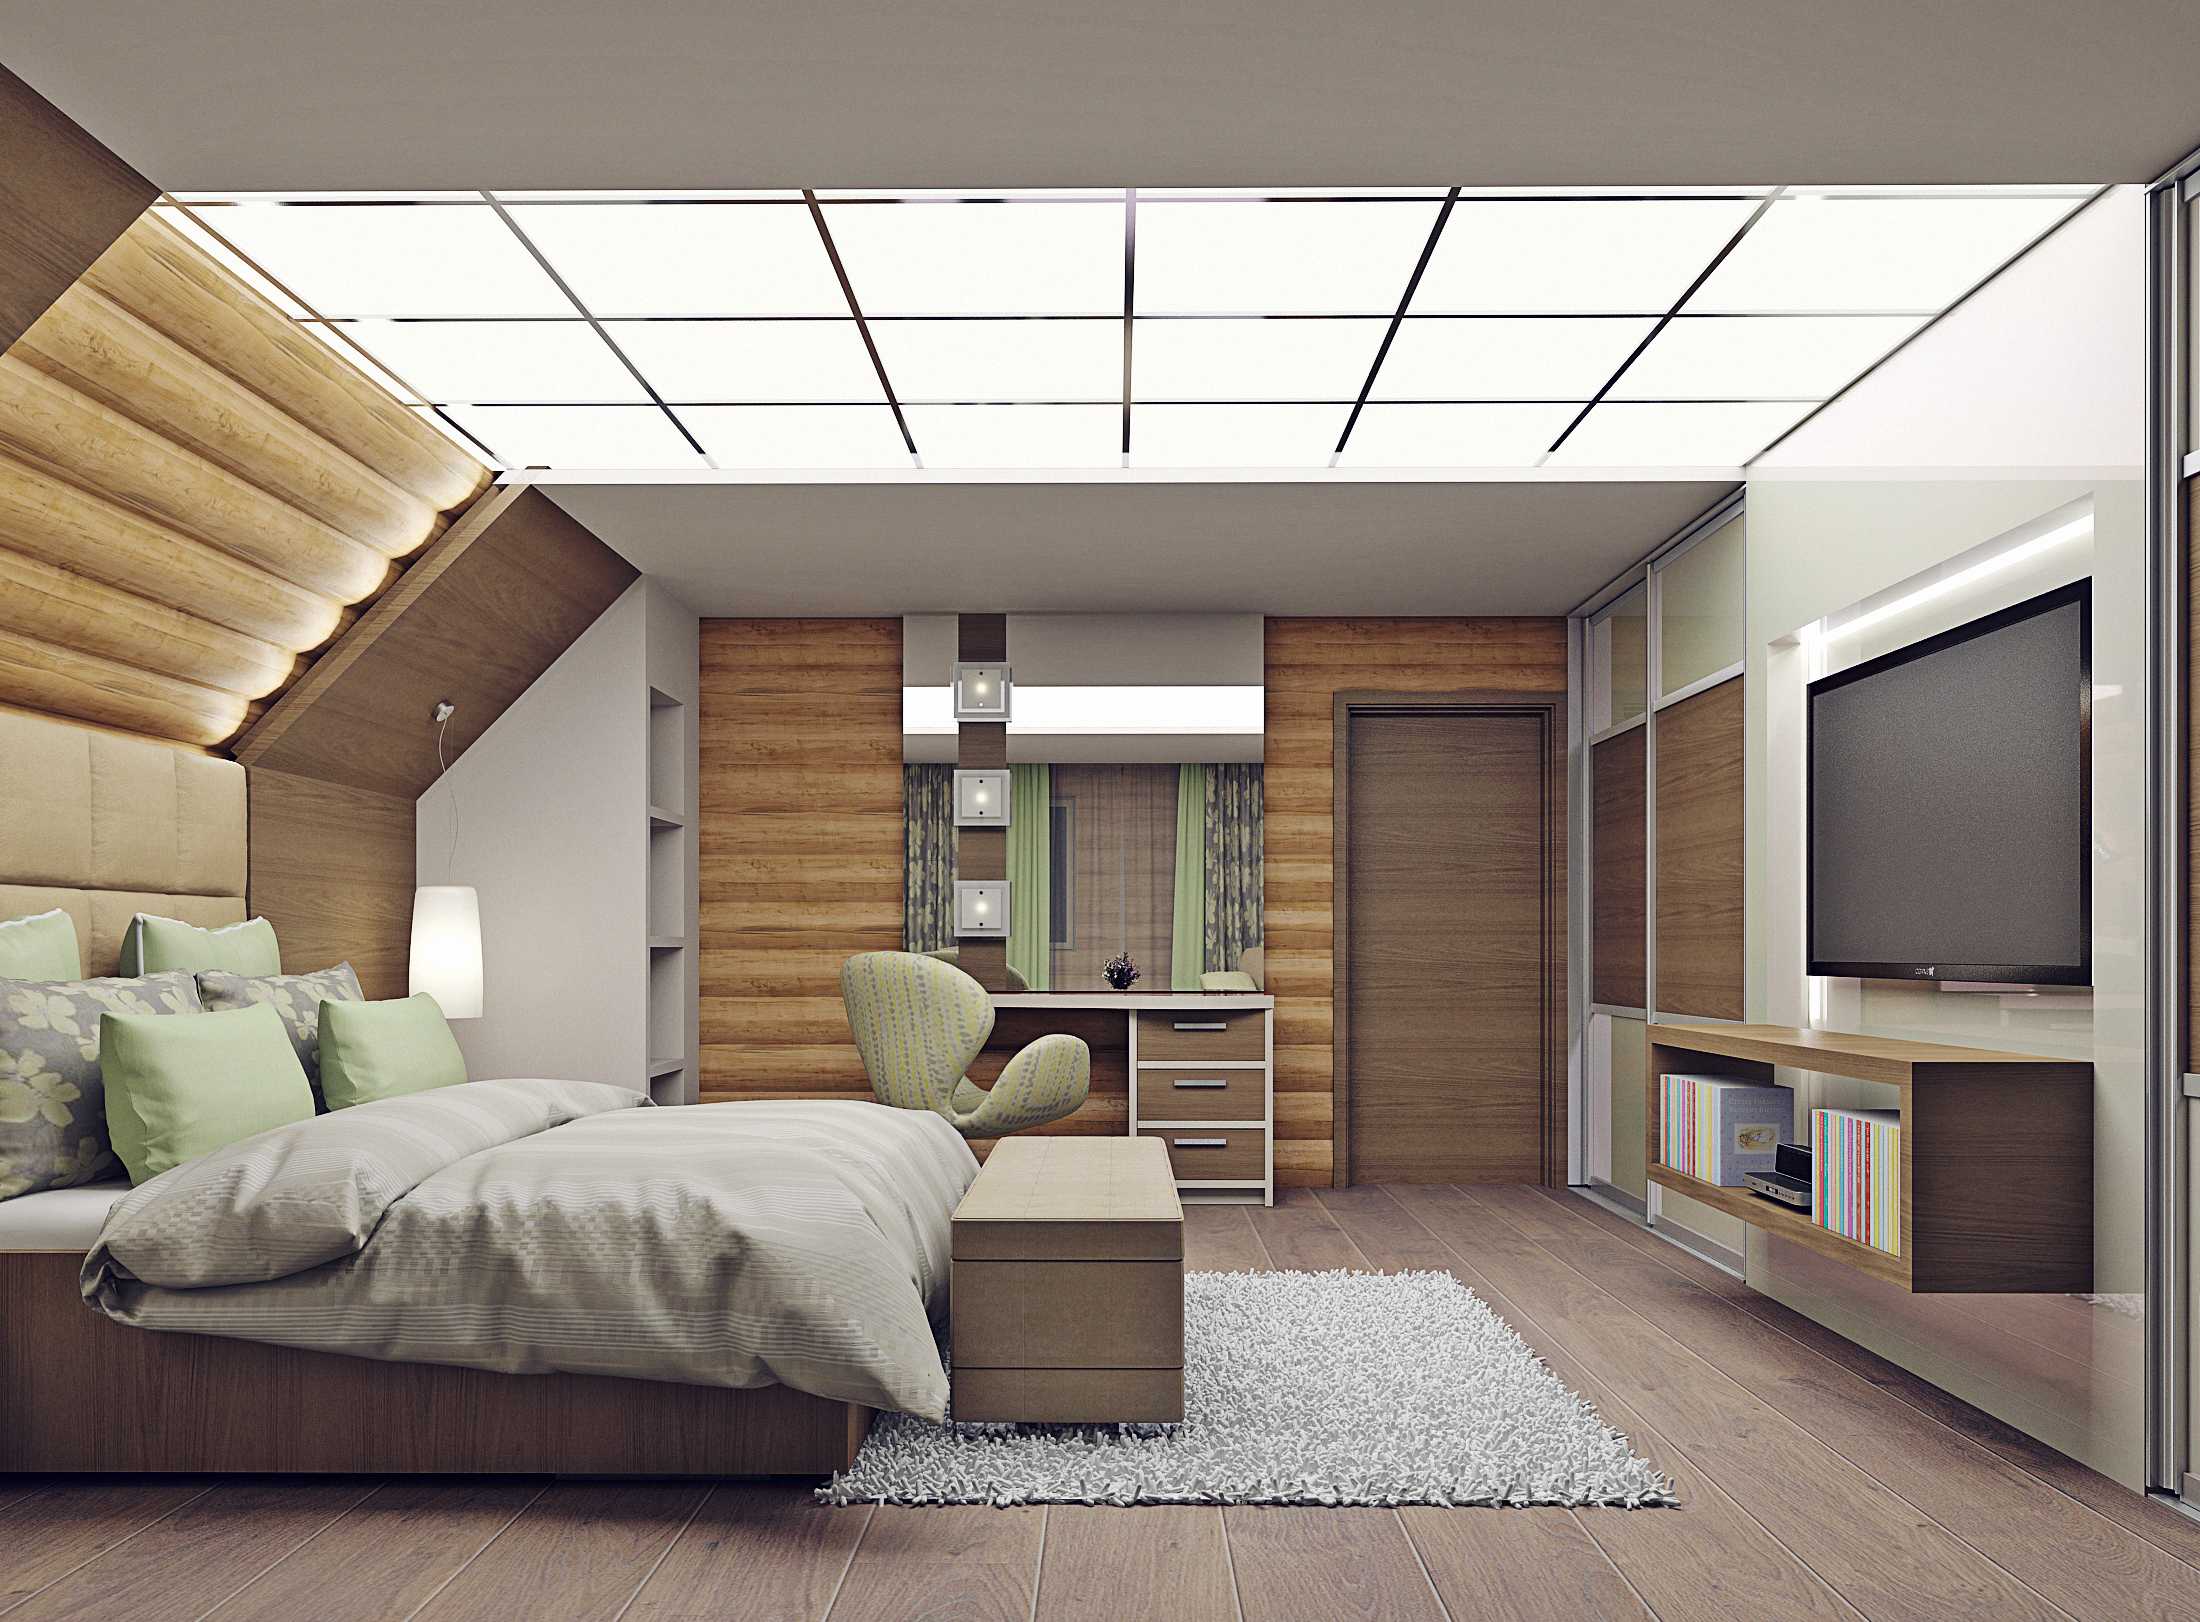 Спальня на мансарде (95 фото): дизайн интерьера комнаты на чердаке в доме со стойками, на мансардном этаже с комбинированной отделкой